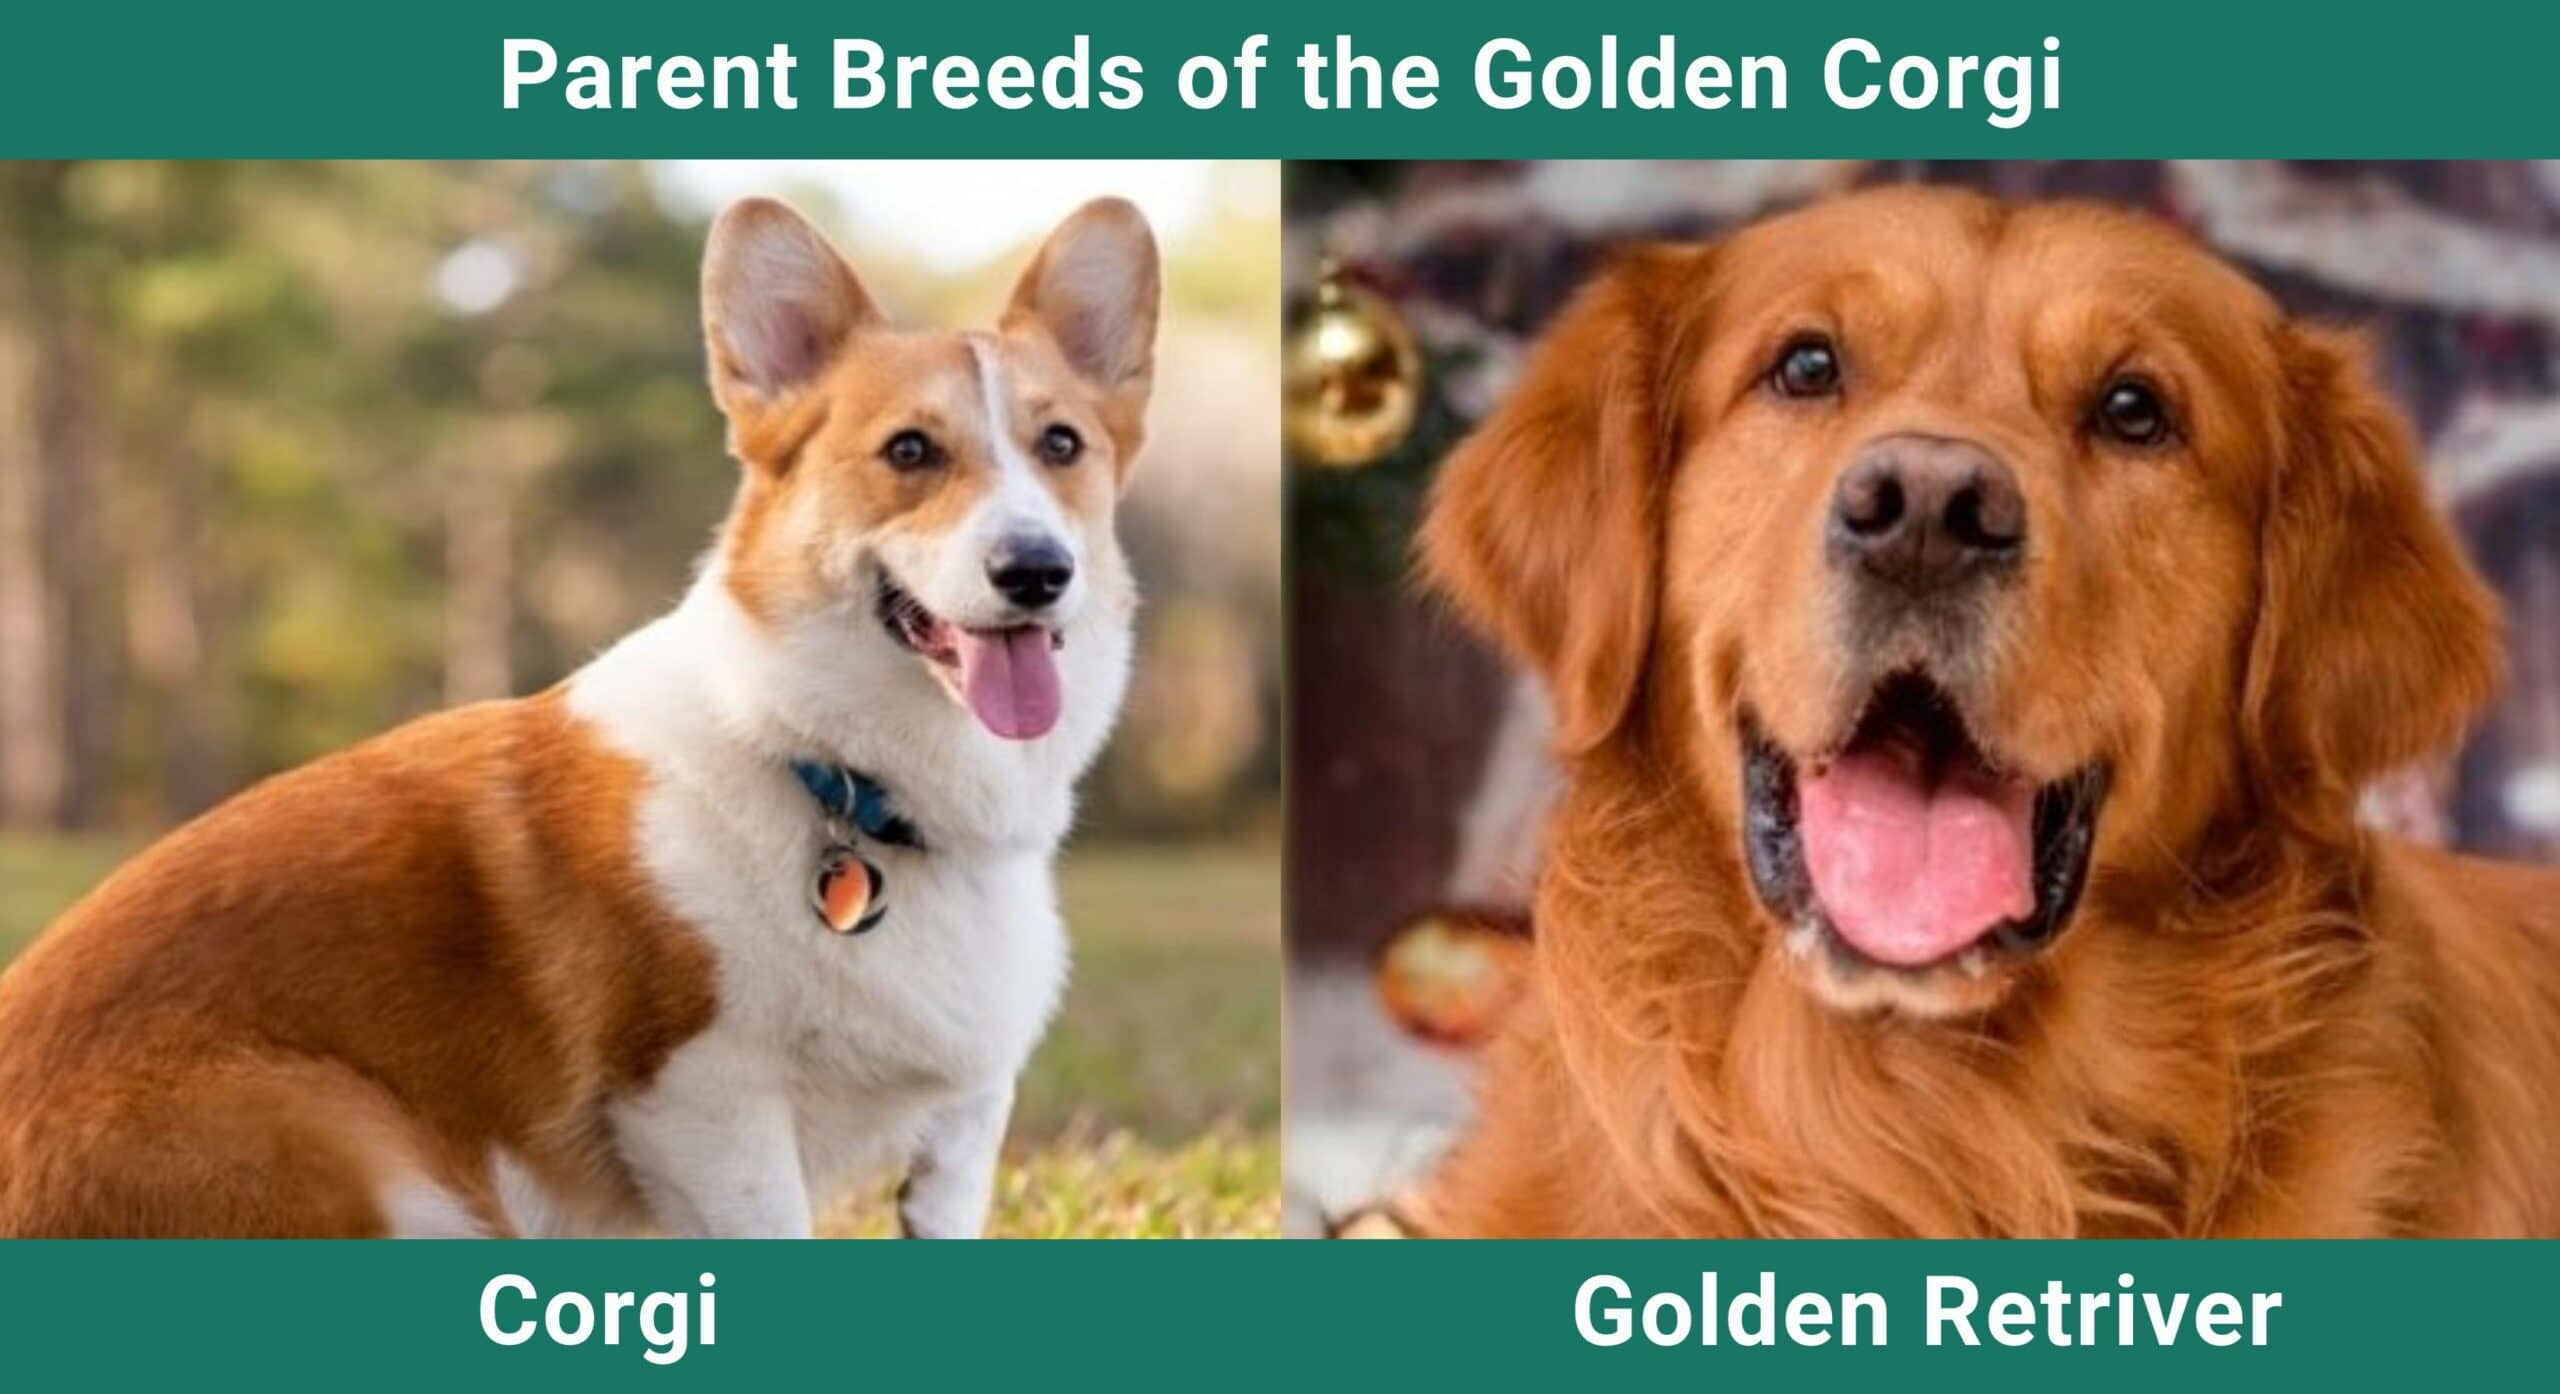 Parent breeds Golden Corgi